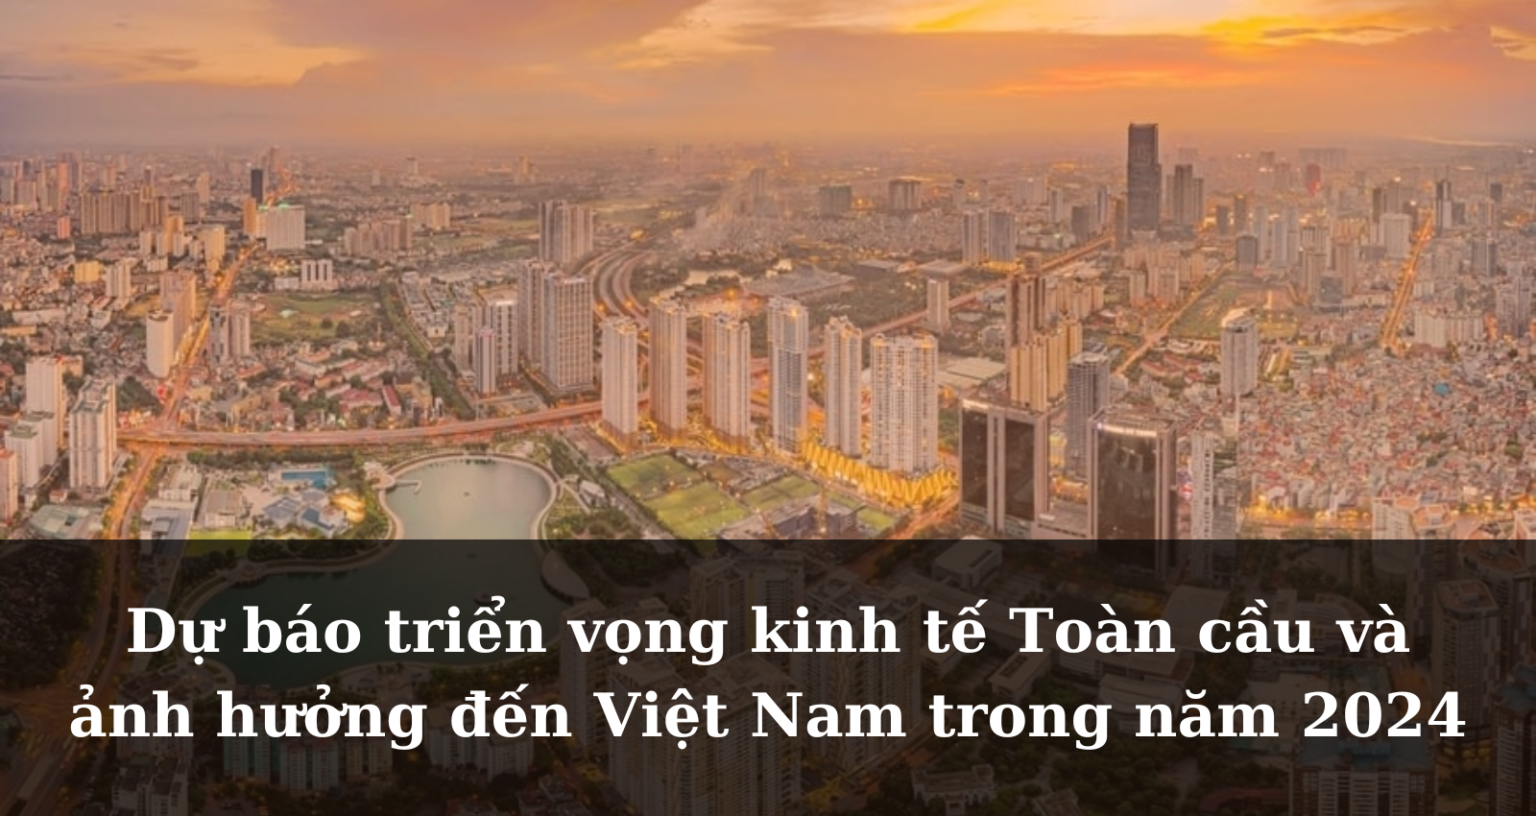 Dự báo triển vọng kinh tế Toàn cầu và ảnh hưởng đến Việt Nam trong năm 2024